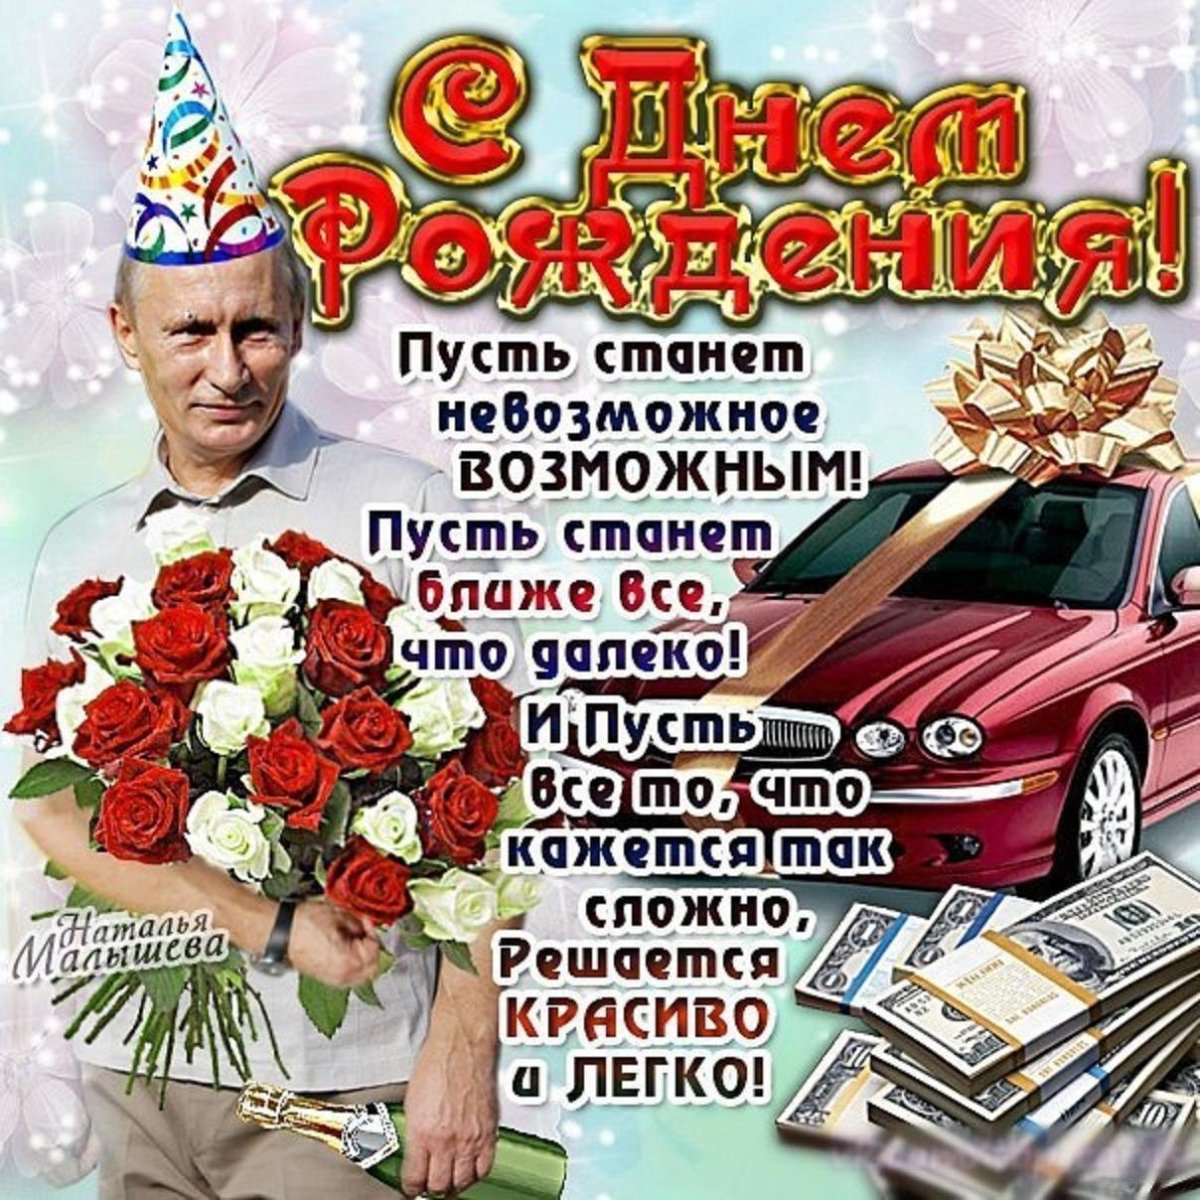 Поздравления с днем рождения зятю - Газета по Одесски